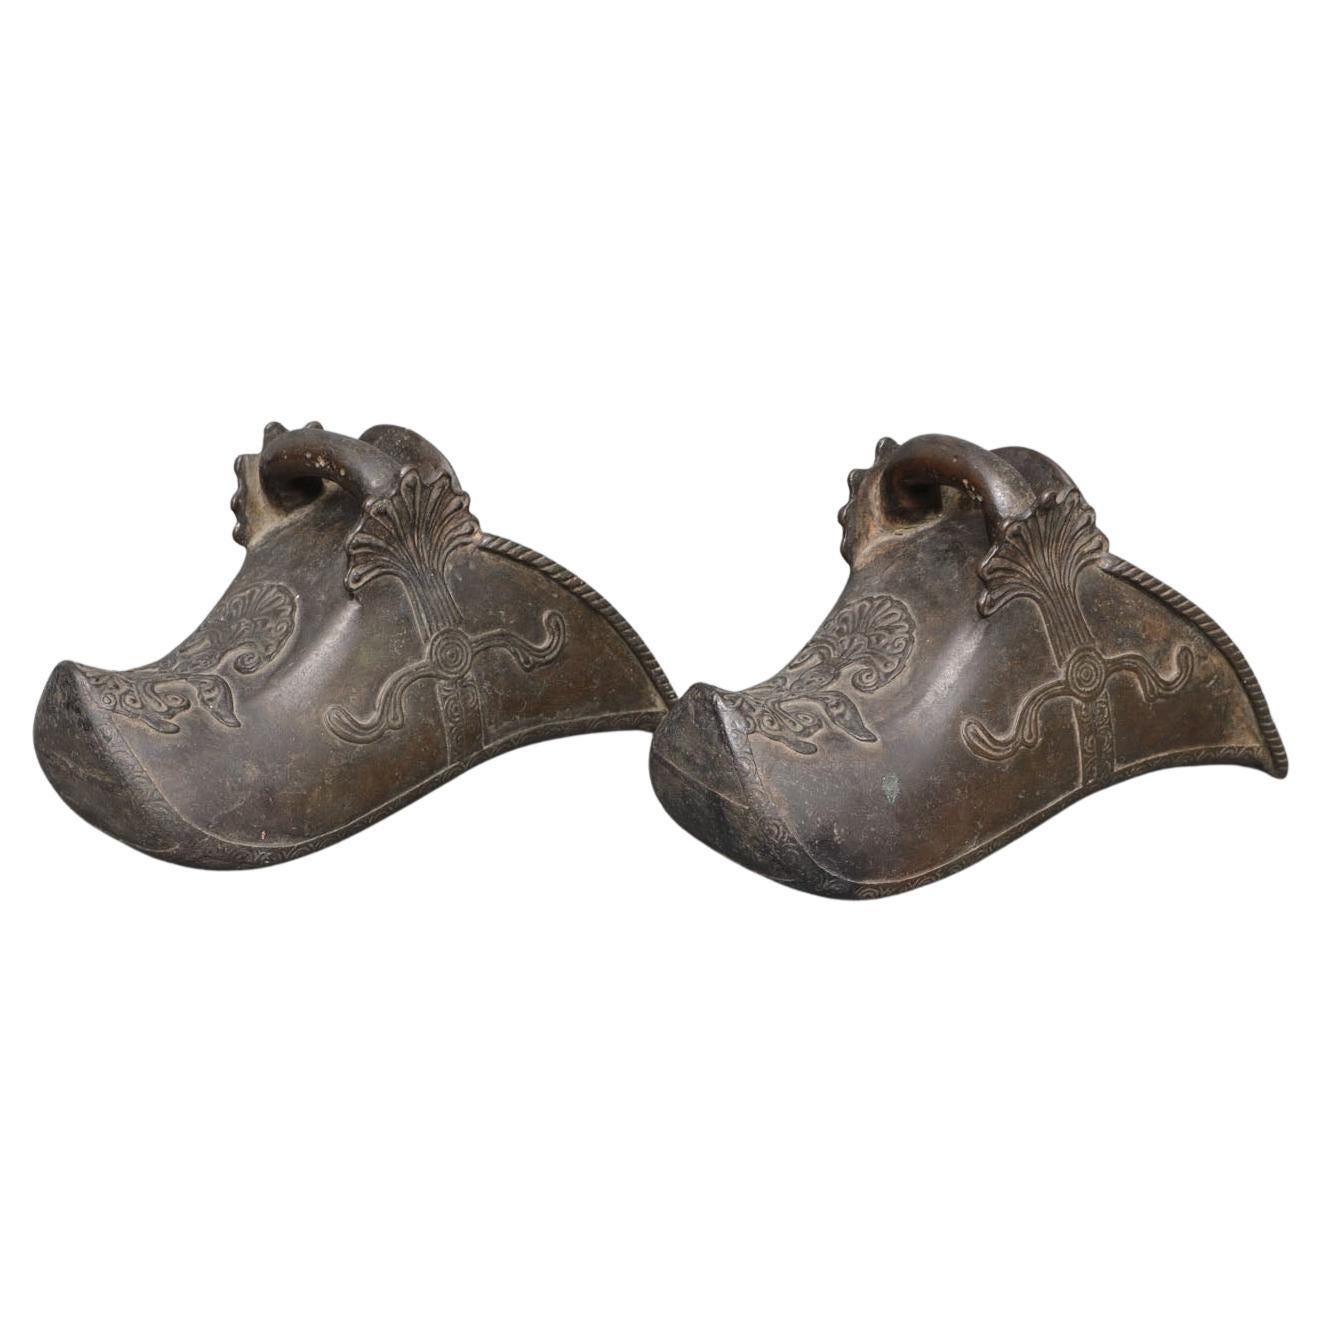 Paire de étriers de cheval « Conquistador » en bronze en forme de chaussure avec motif en bas-relief